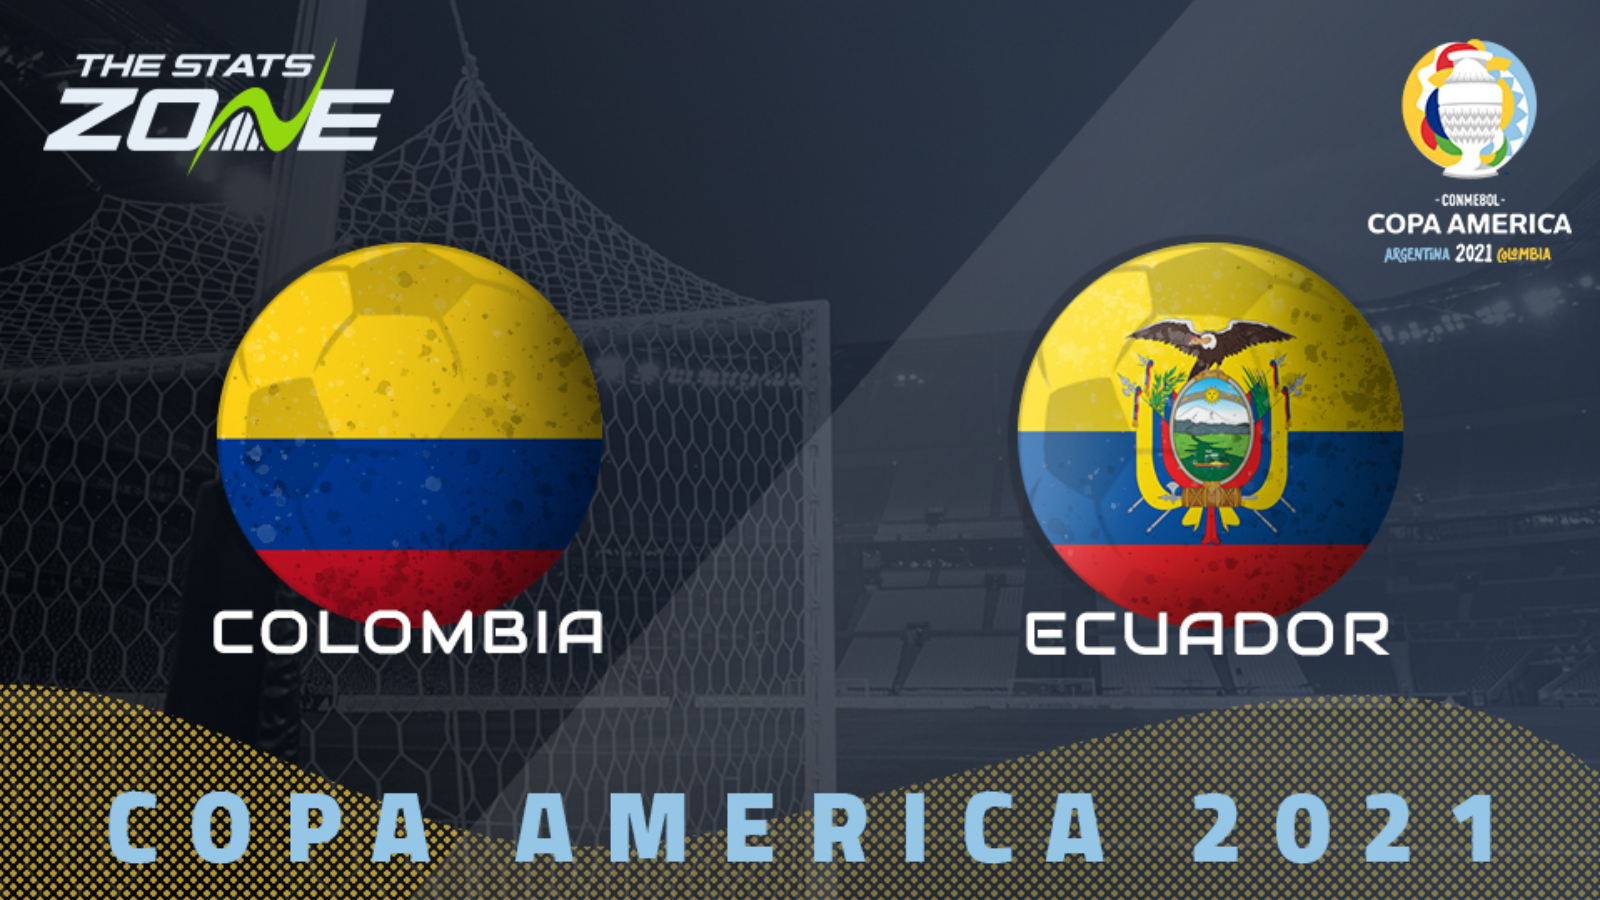 2021 Copa America Colombia Vs Ecuador Preview Prediction The Stats Zone